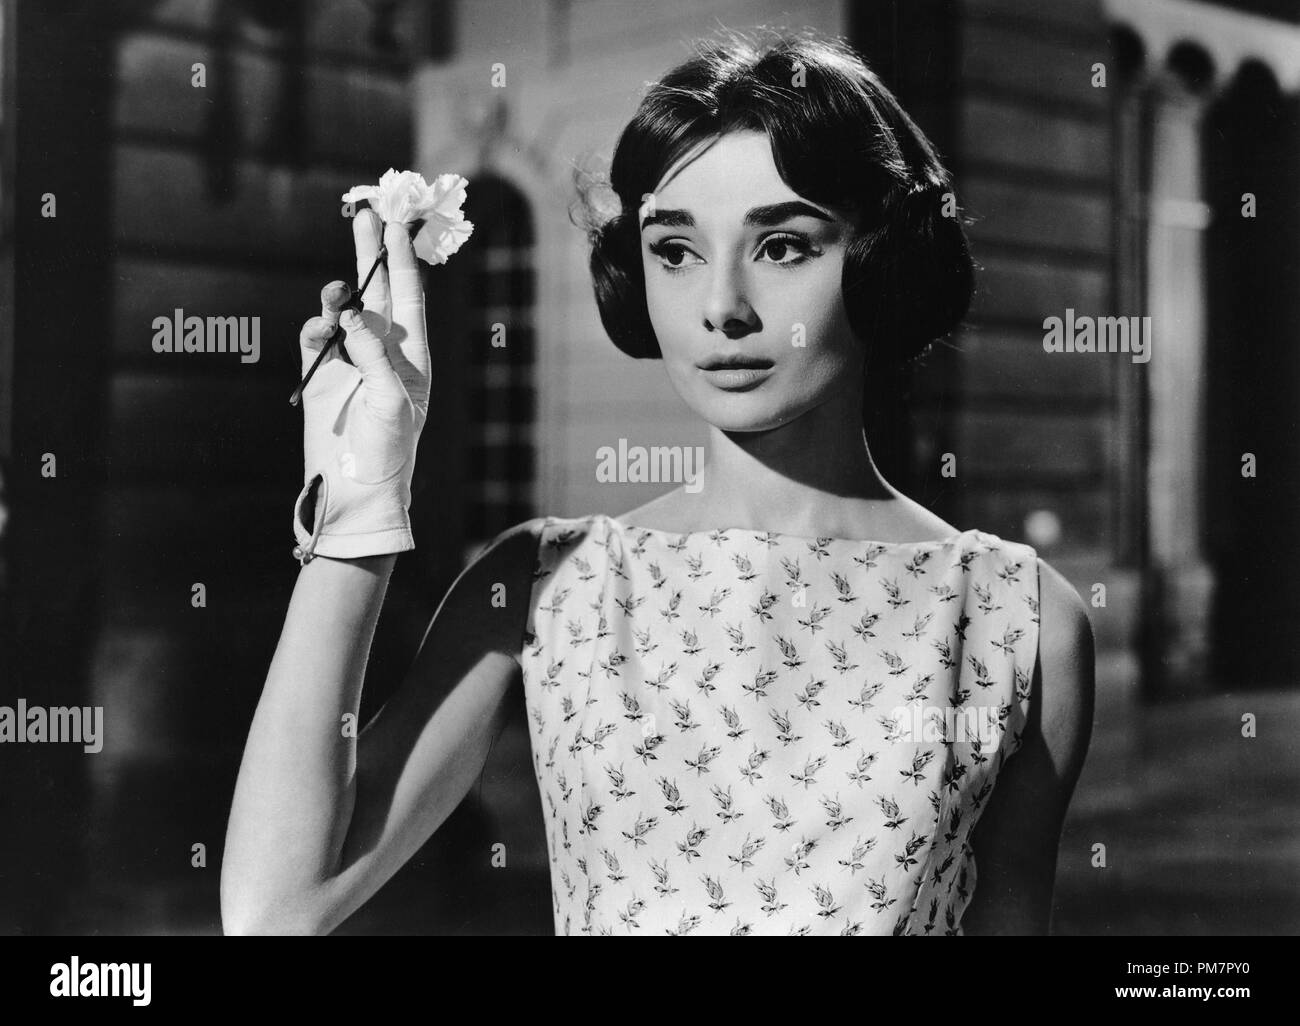 Studio publicidad todavía: (Archivística Cine Clásico - Audrey Hepburn retrospectiva) "el amor en la tarde" Audrey Hepburn 1957 Allied Artists Archivo de referencia # 31386 1073THA Foto de stock